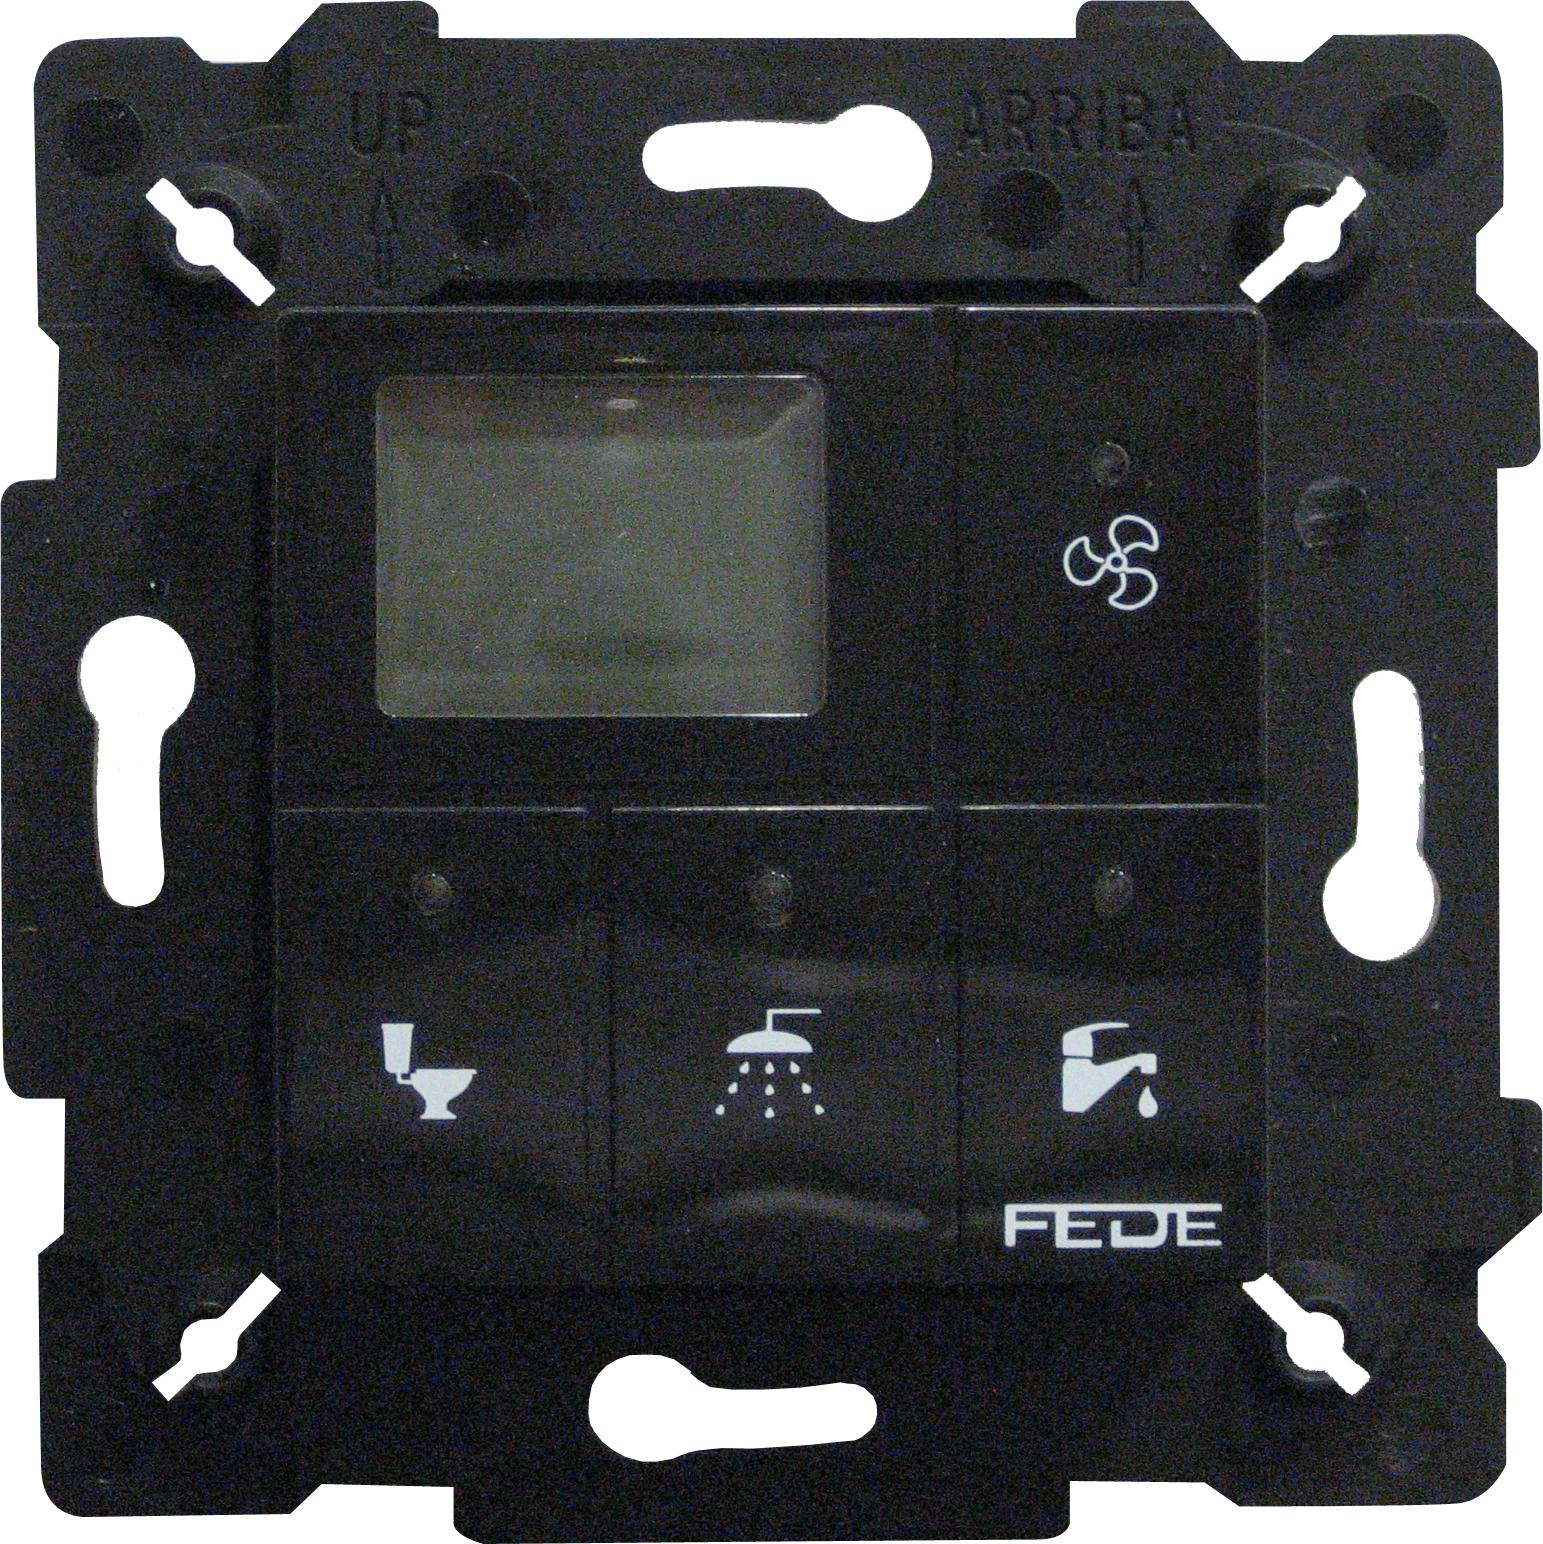  артикул FD28603-M название FEDE Черный Сенсорный выключатель для ванной (800 Вт освещение, 150 Вт вентиляция) Black (Negro)